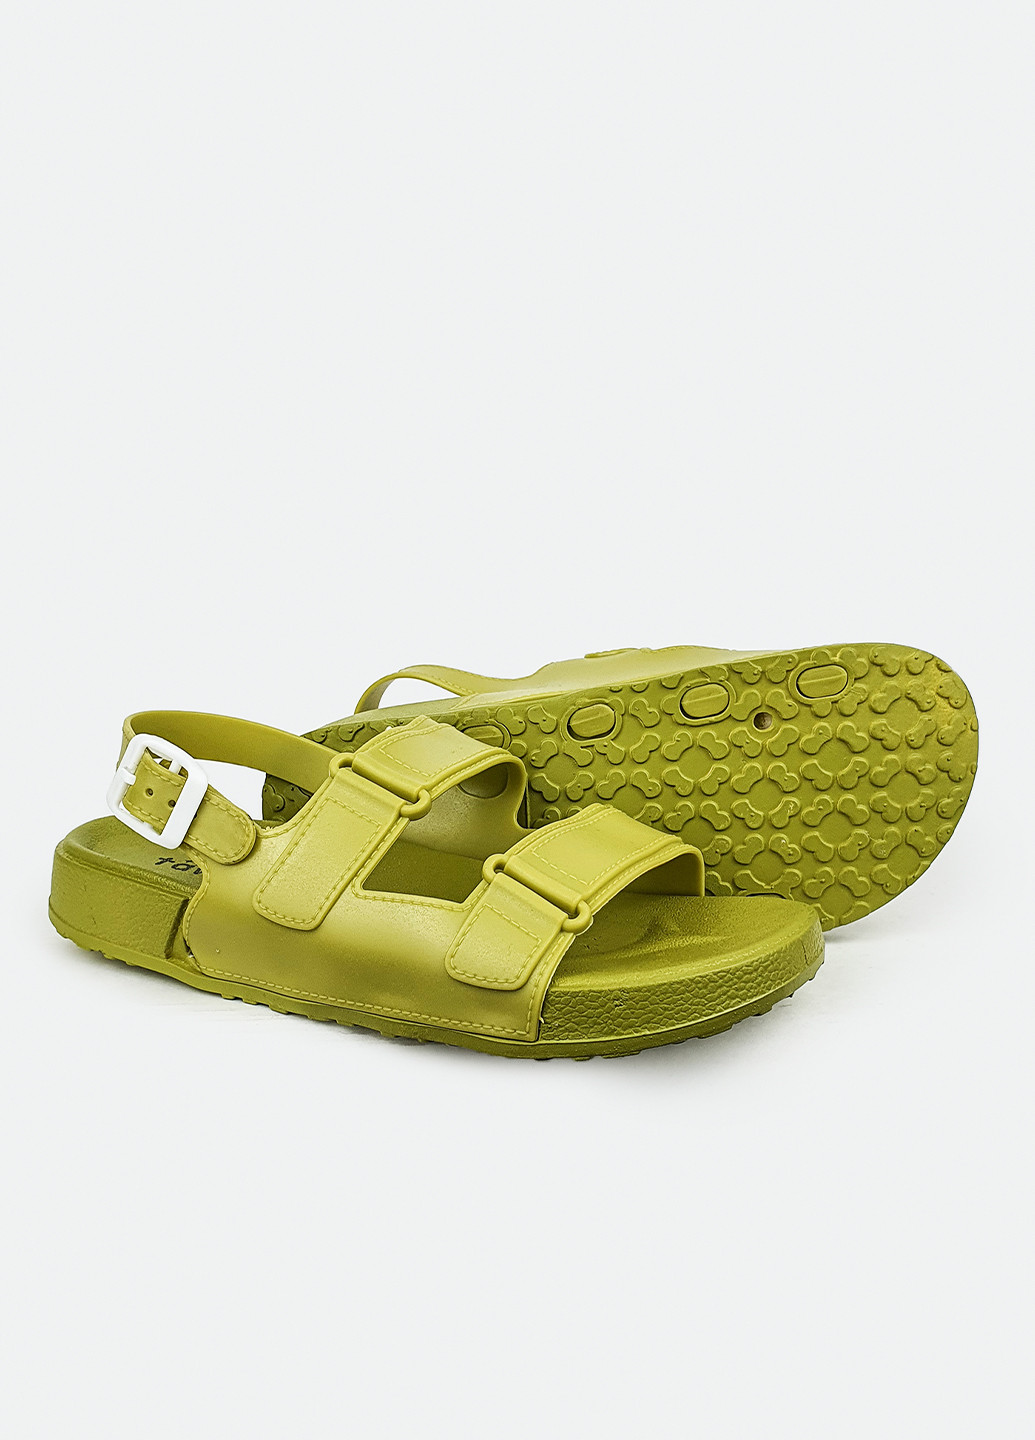 Пляжные пляжные женские сандали модные салатовые зеленые 38 Fashion